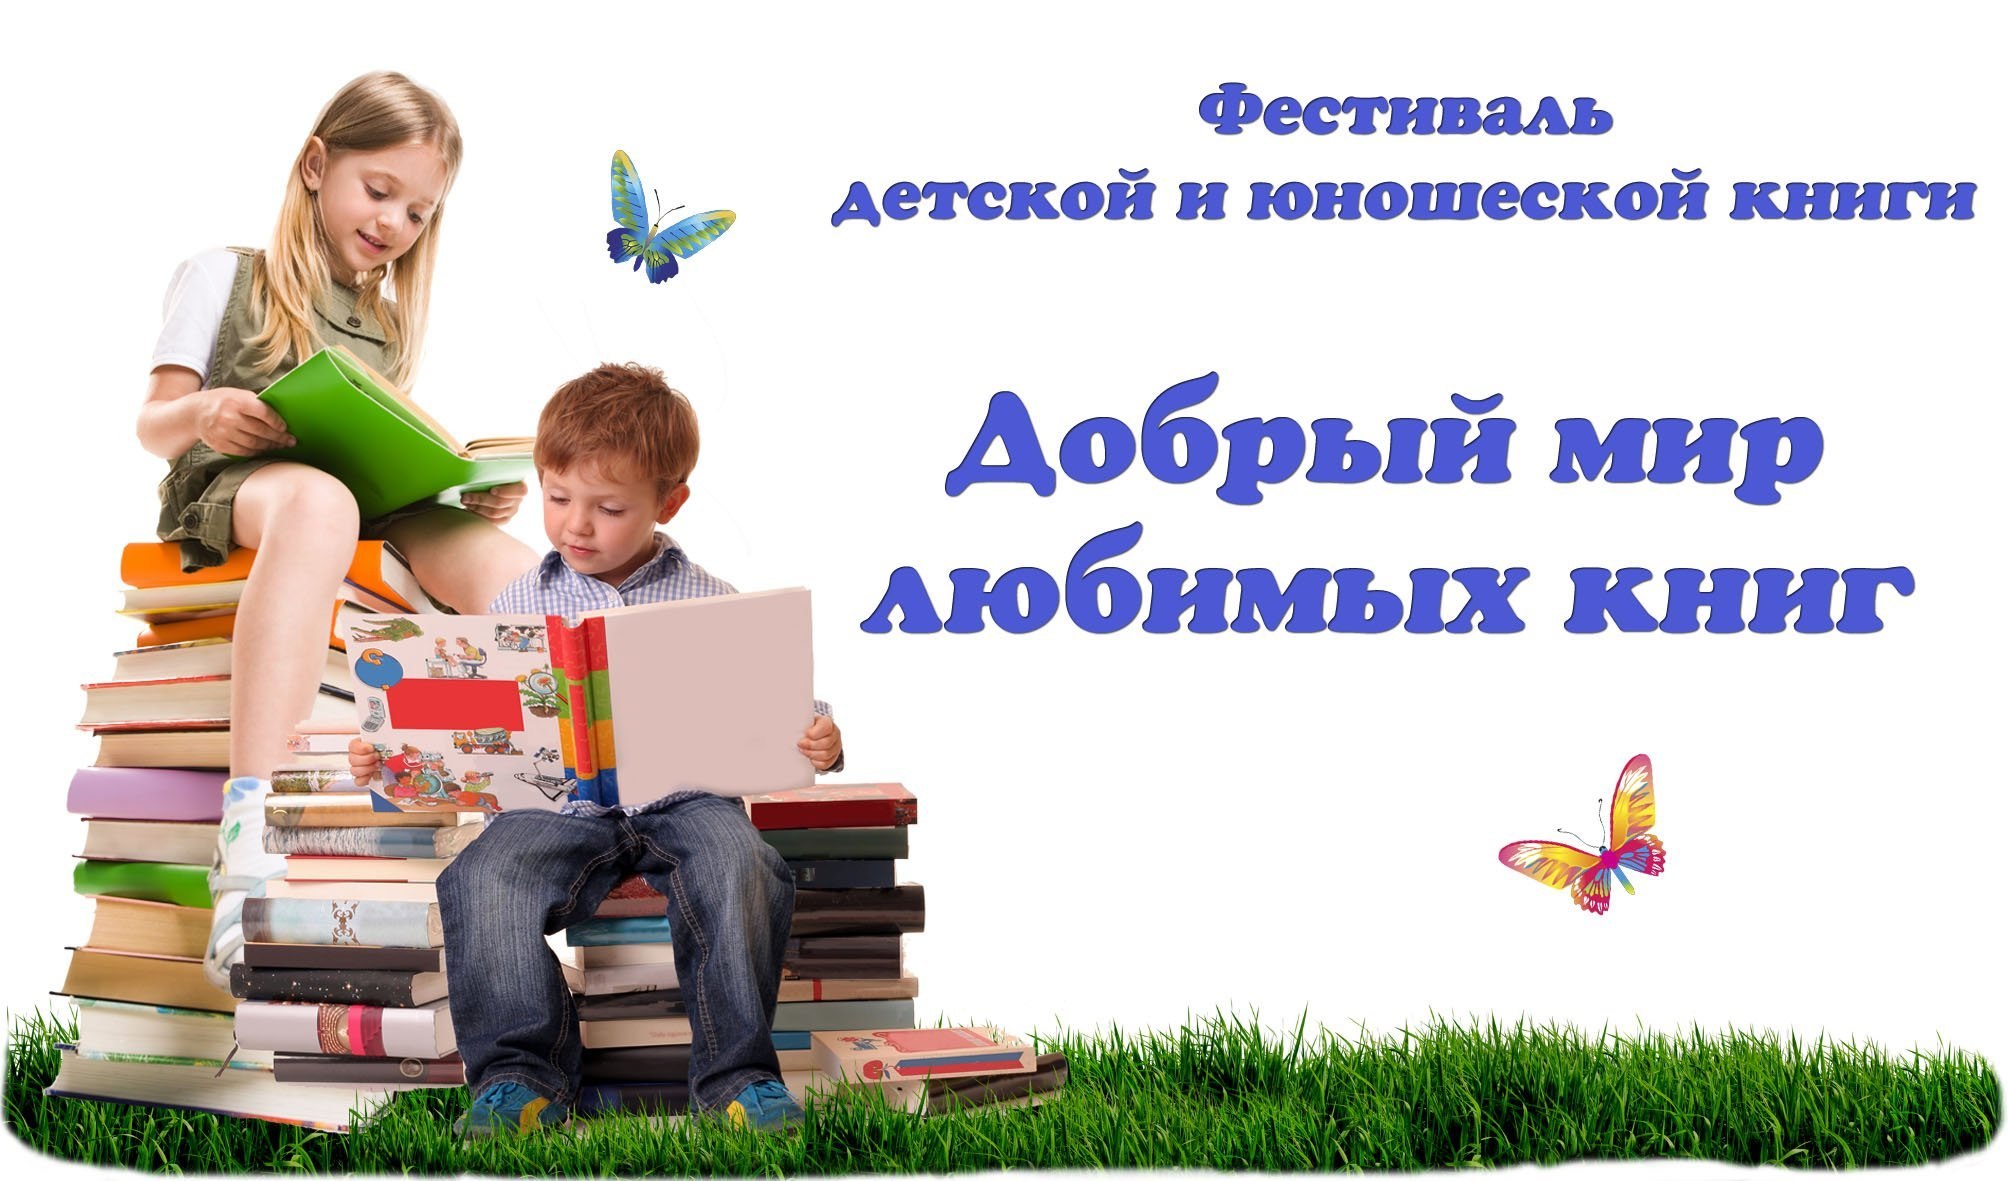 Конкурс дети книги. Международный день детской книги. Мир детской книги в библиотеке. Фон неделя детской книги в библиотеке. День чтения книги.